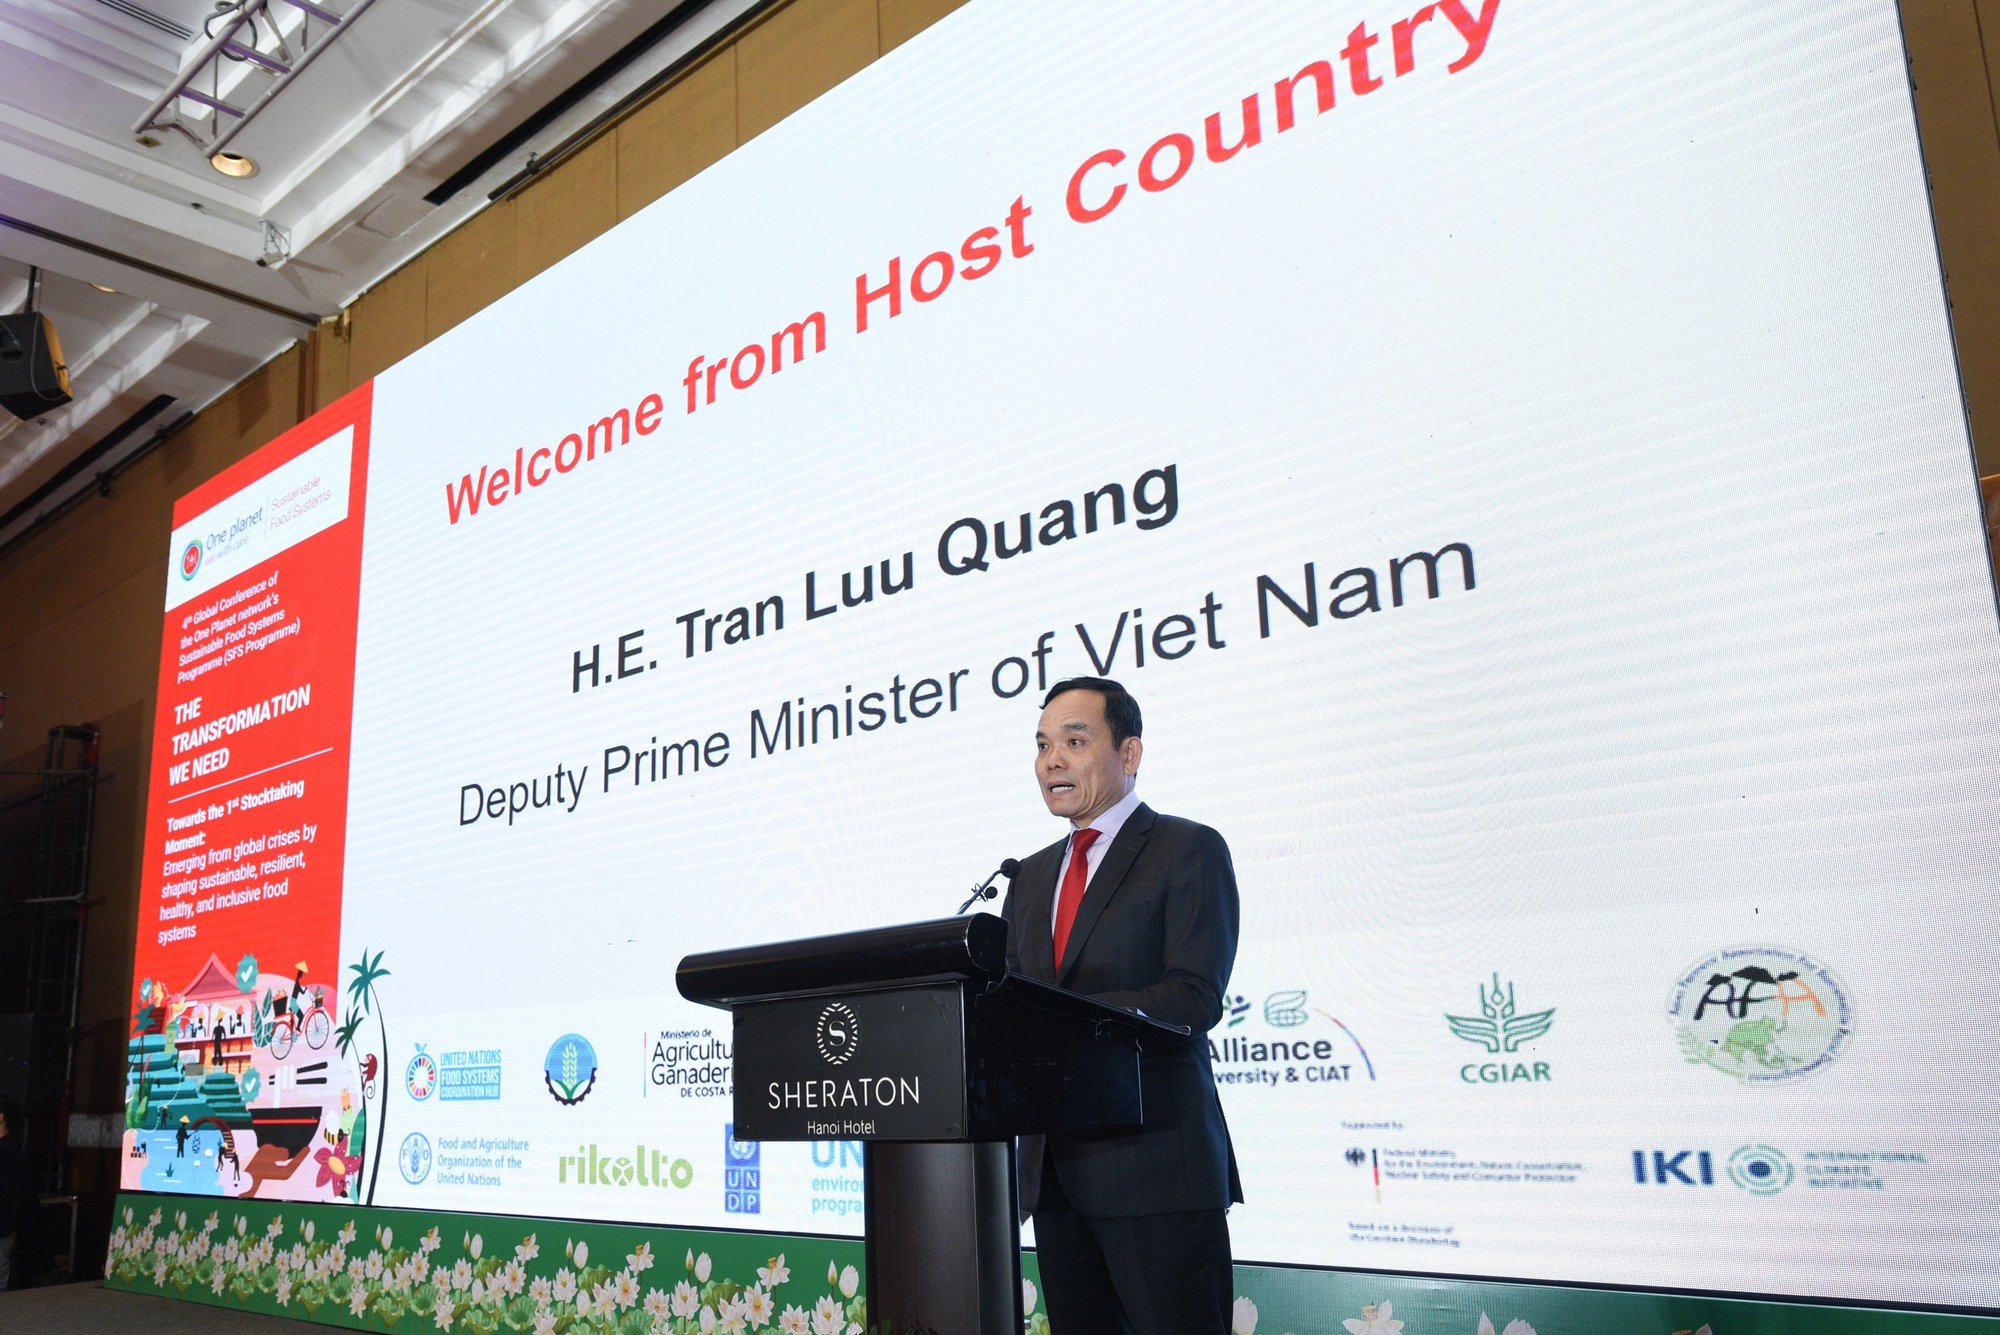 Phó Thủ tướng Trần Lưu Quang: Việt Nam sẵn sàng chia sẻ kinh nghiệm phát triển nông nghiệp, nông thôn - Ảnh 1.